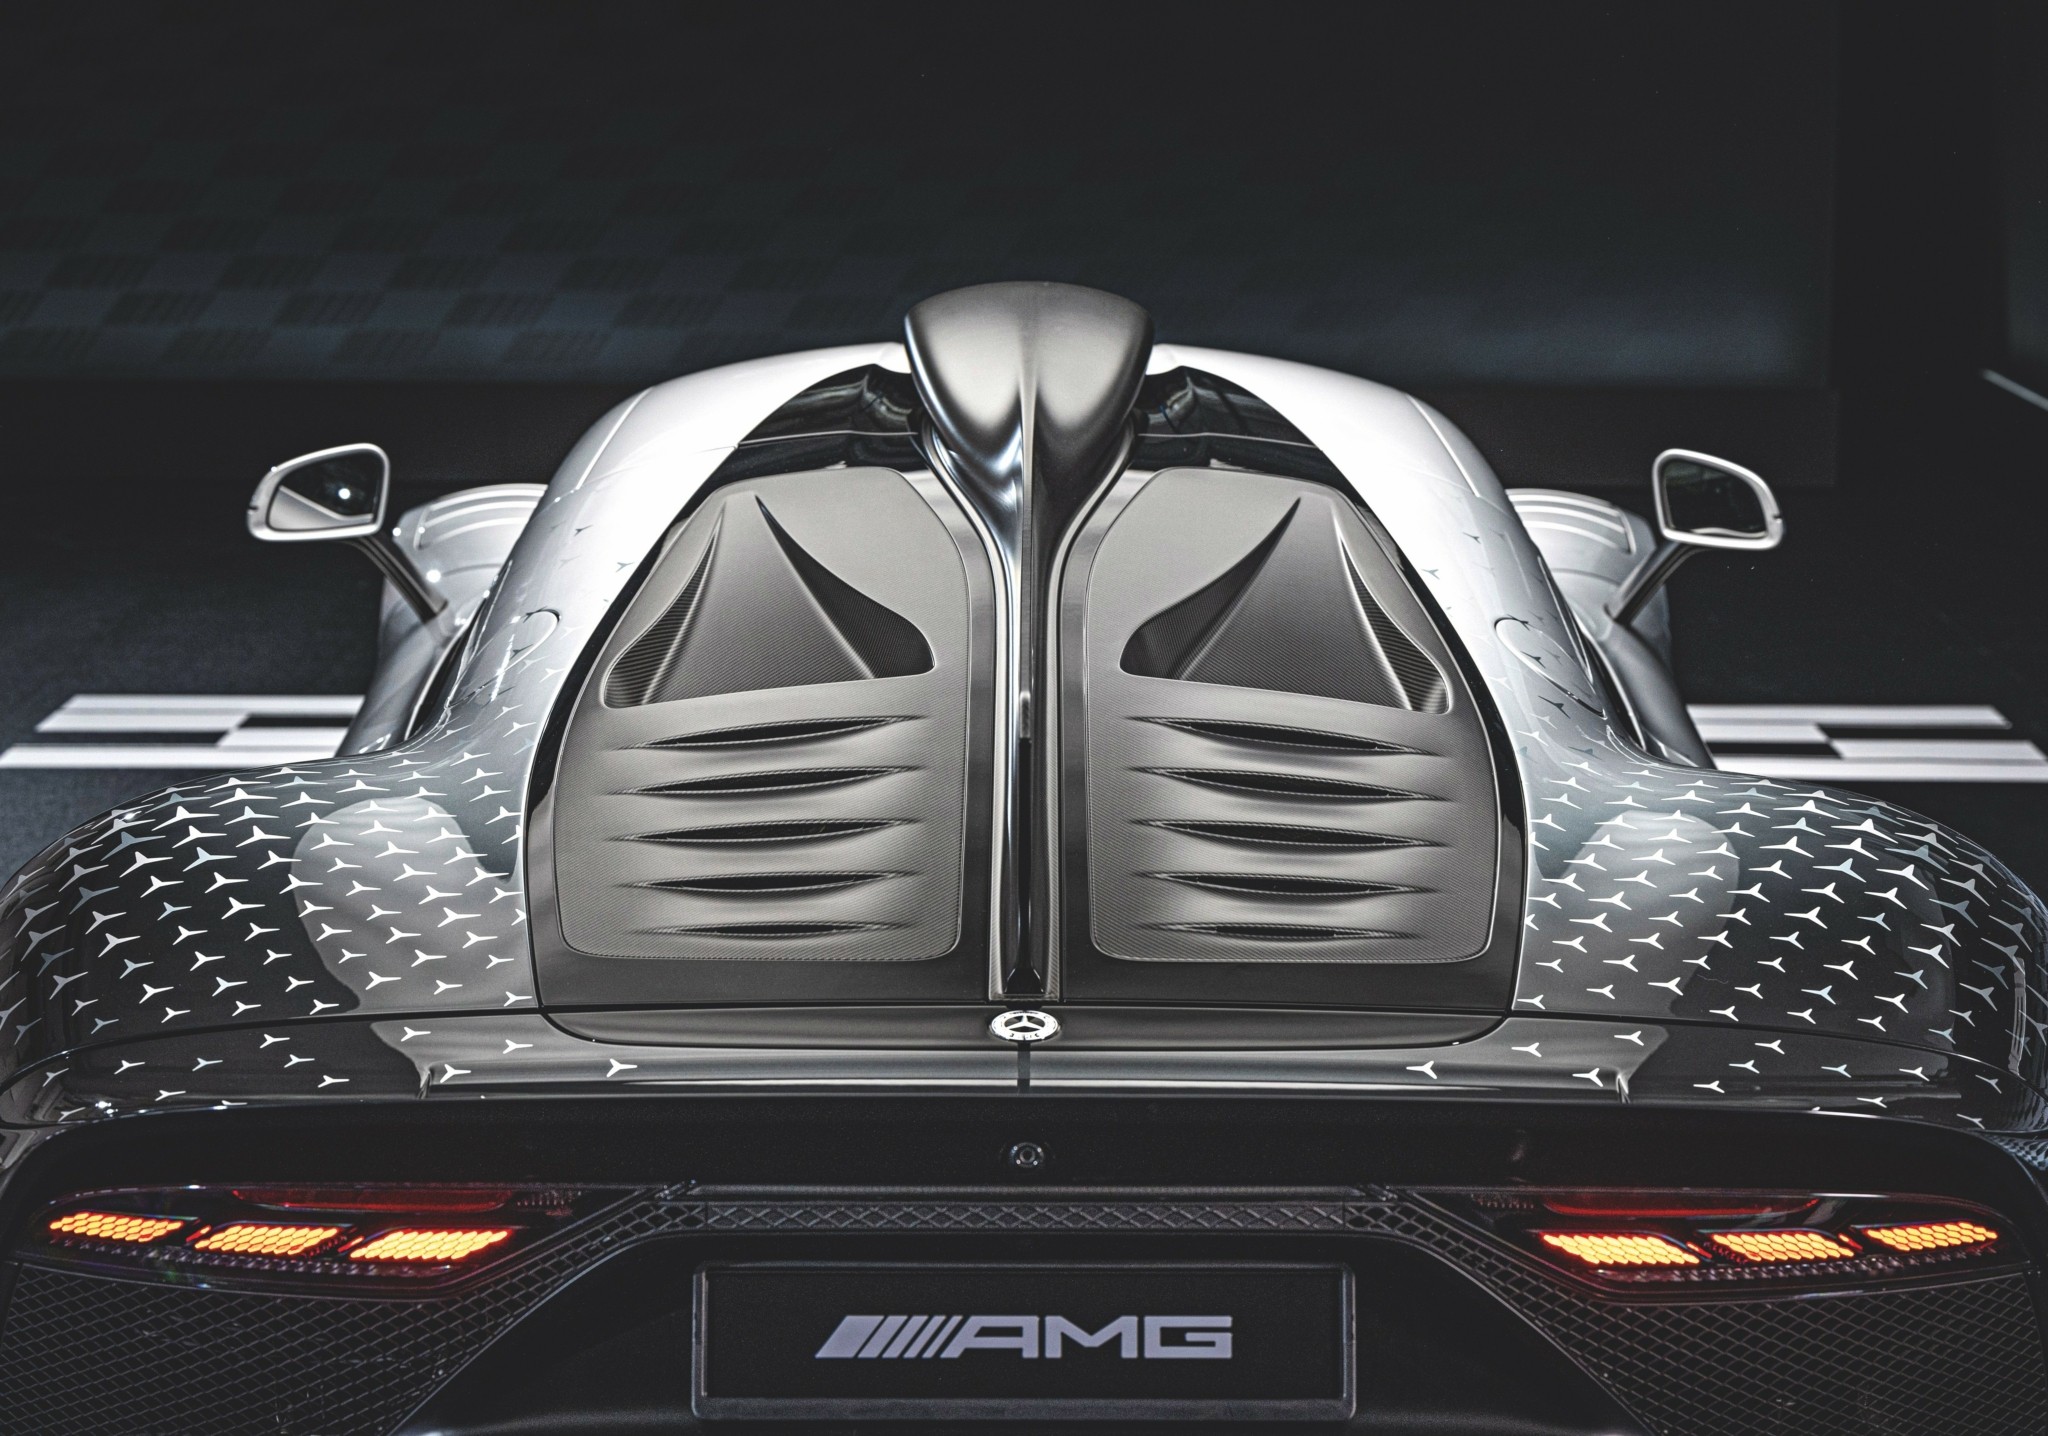 Το εξωγήινο Mercedes-AMG One των 3 εκατομμυρίων ευρώ με τη μυστική λίστα των 275 αγοραστών της είναι sold-out